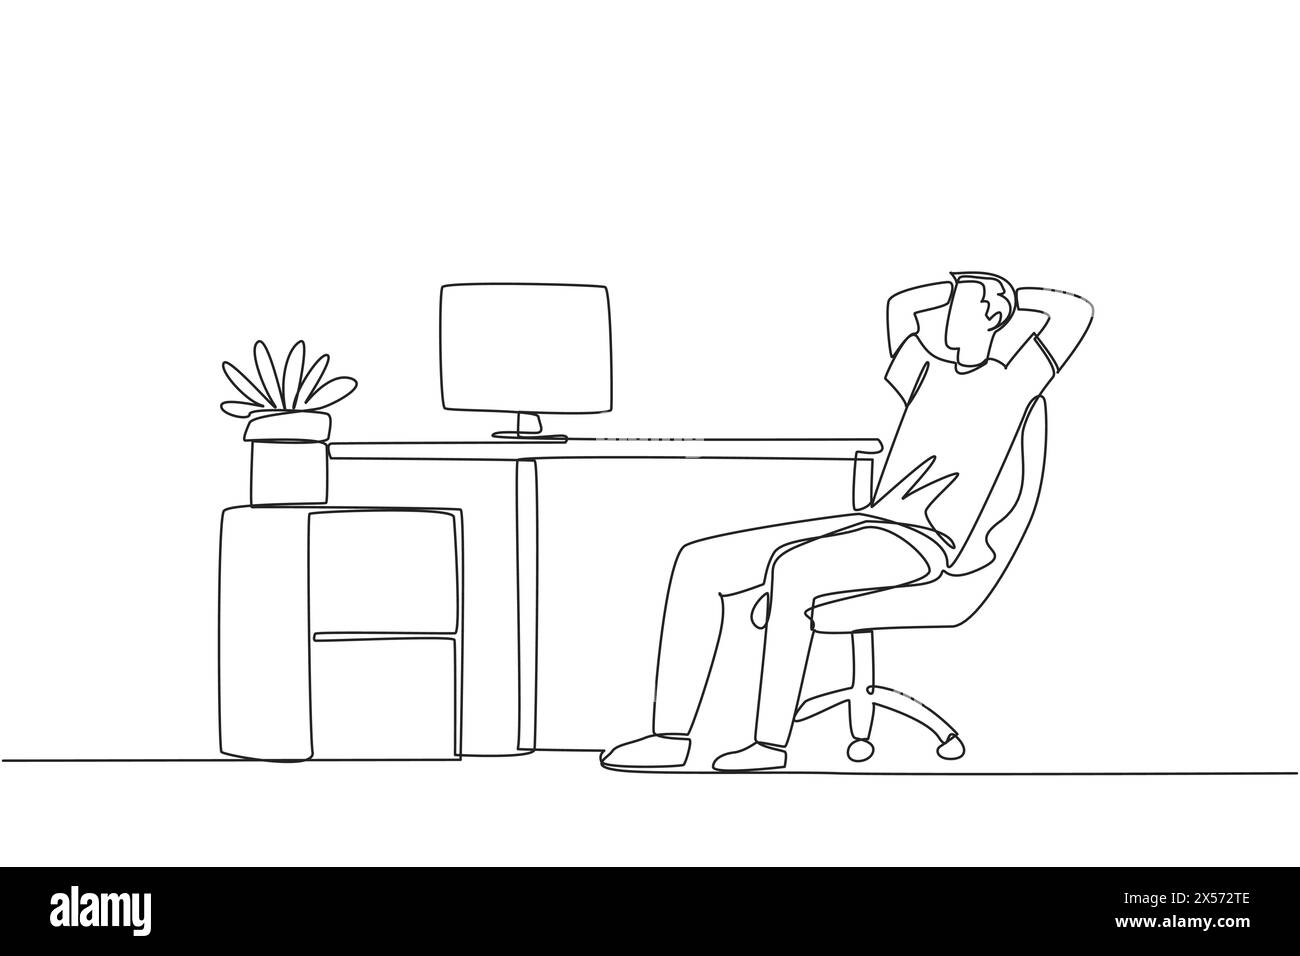 Una sola linea disegna un uomo rilassato seduto su una sedia da lavoro con le mani dietro la testa. Lavoro straordinario nei fine settimana. Rilassati per un momento dal ritmo frenetico Illustrazione Vettoriale